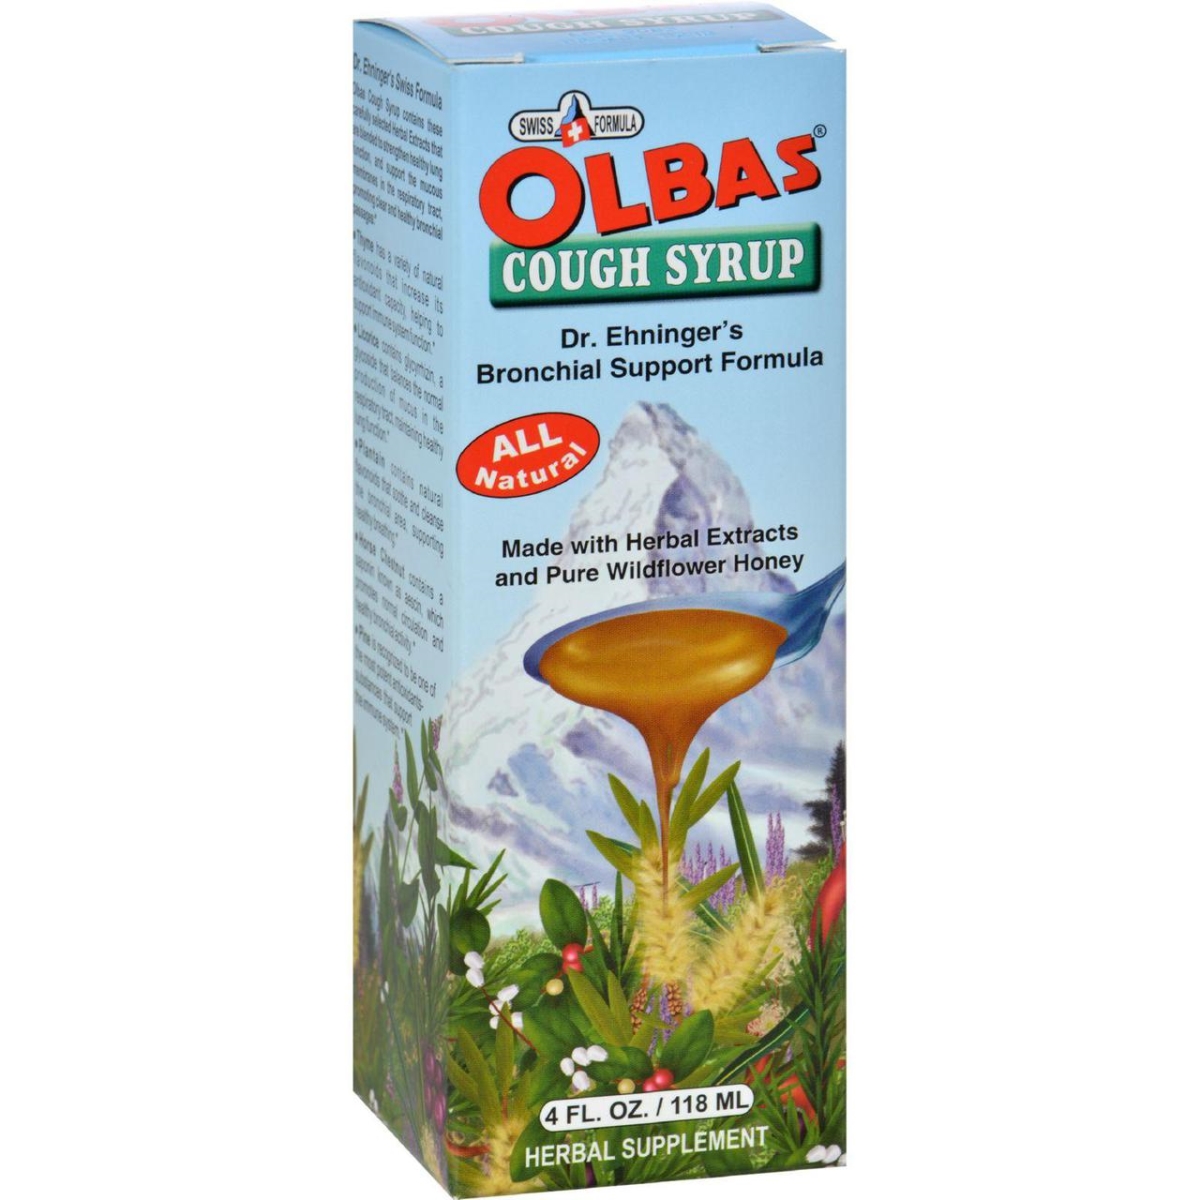 Hg0821405 4 Fl Oz Cough Syrup